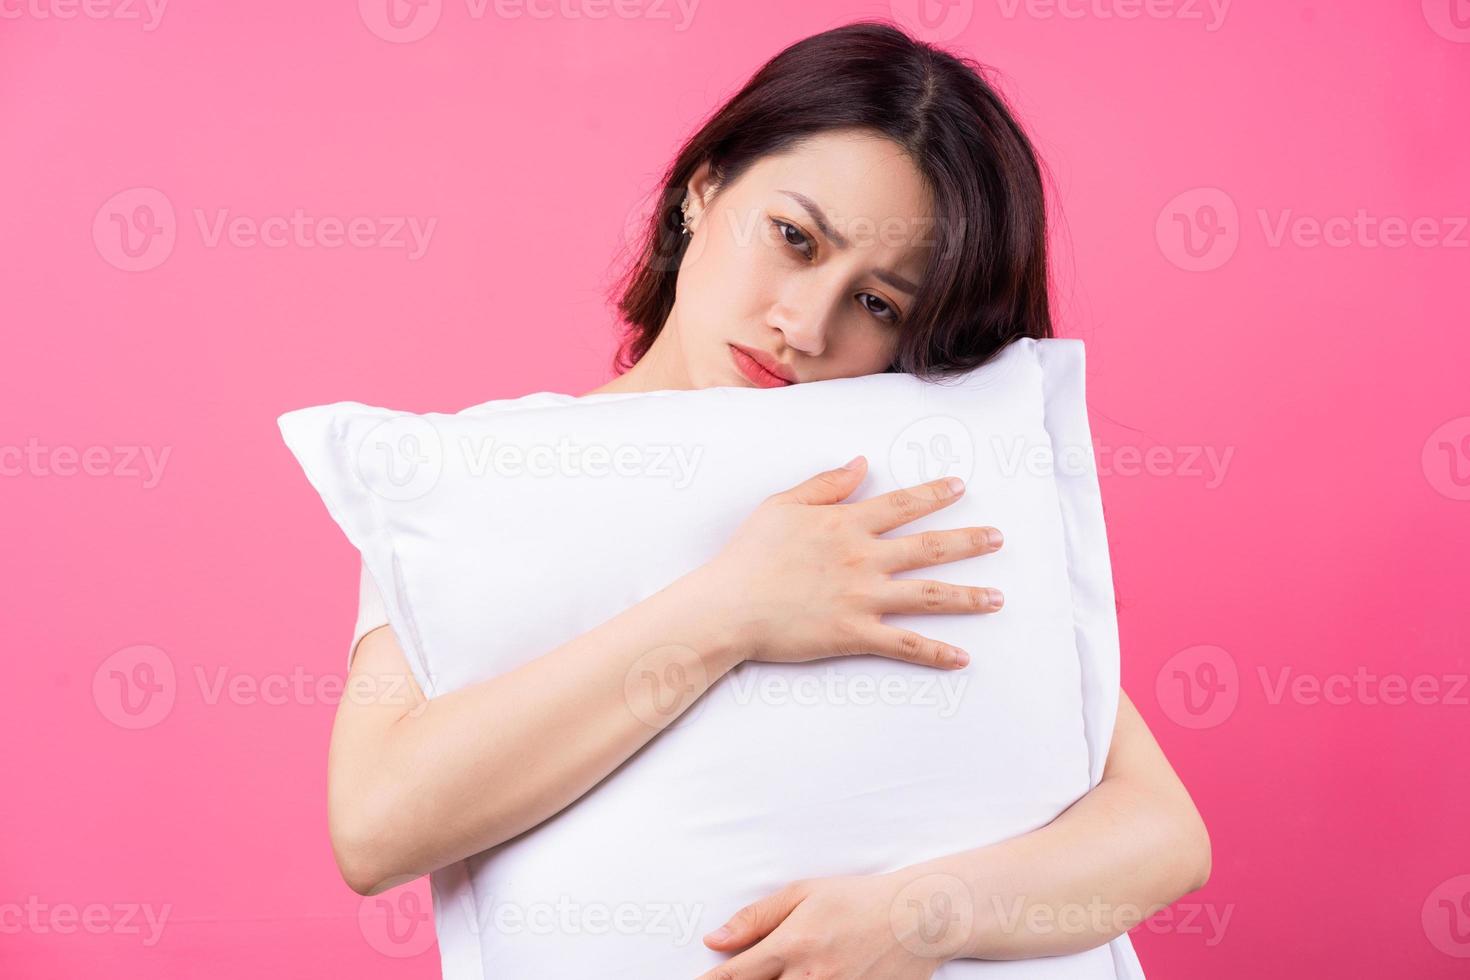 La mujer asiática está abrazando la almohada sobre fondo rosa foto